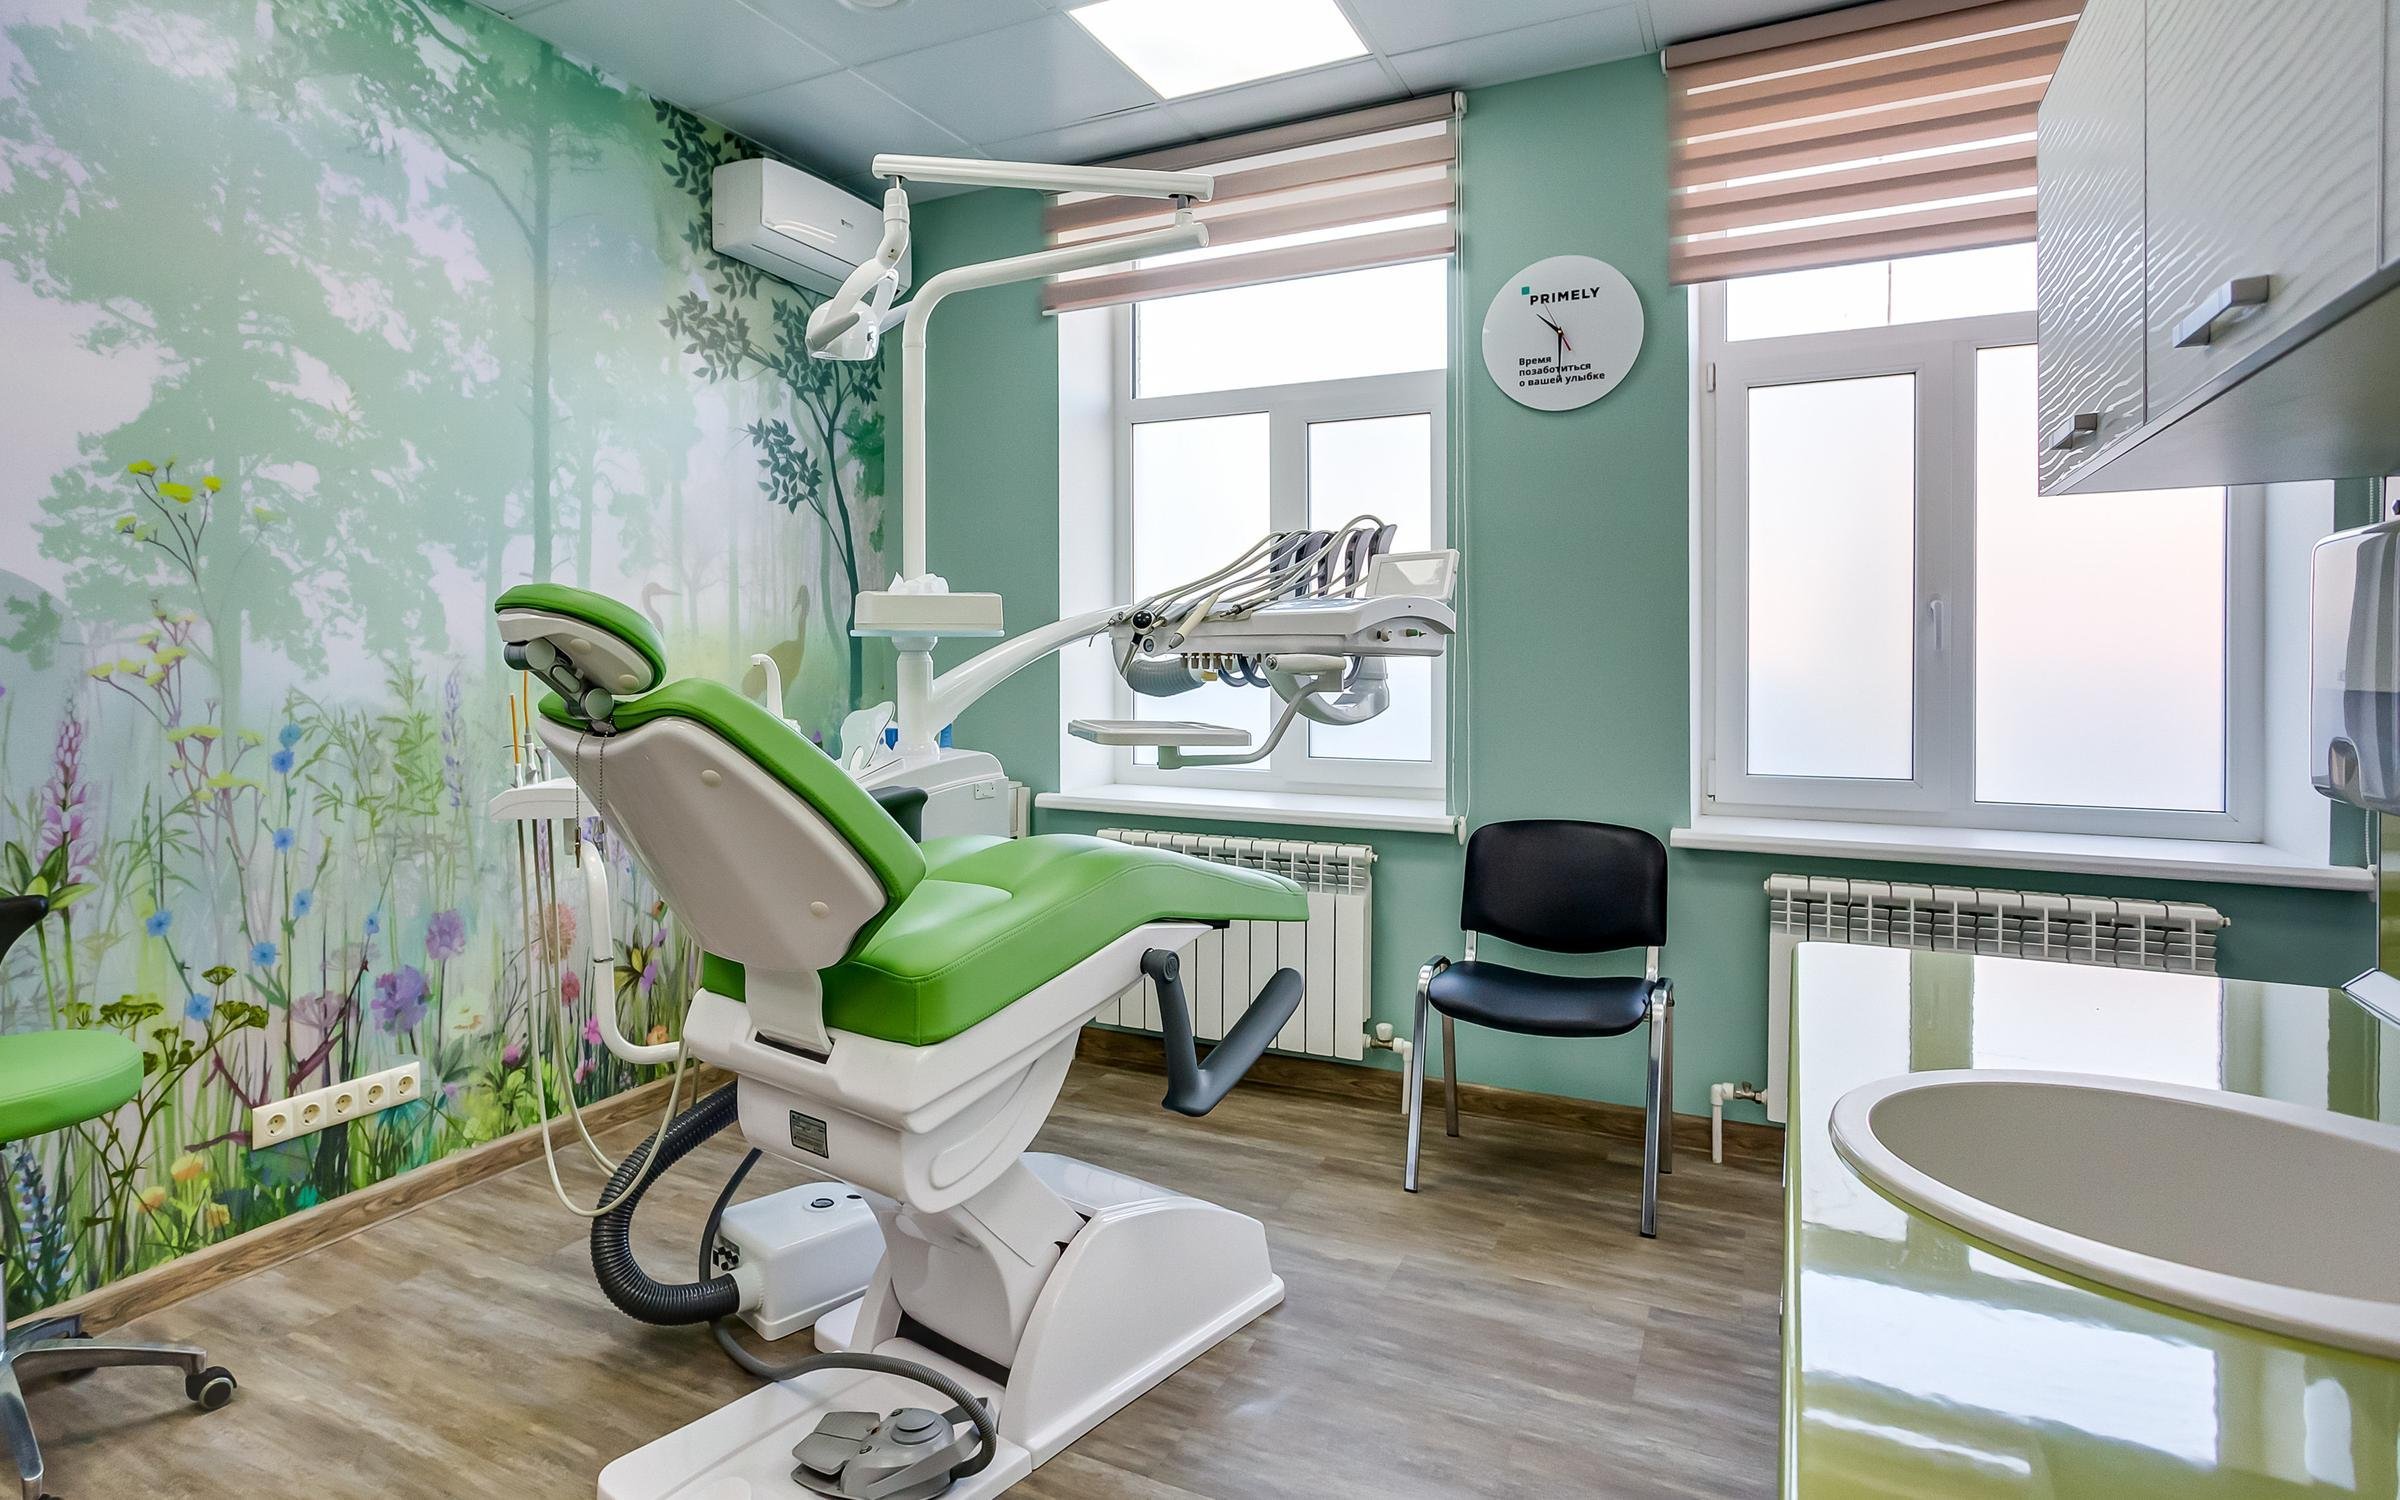 Детские стоматологии стоматология. Стоматологическая клиника. Детская стоматология кабинет. Стоматологическа клиника. Интерьер детской стоматологии.